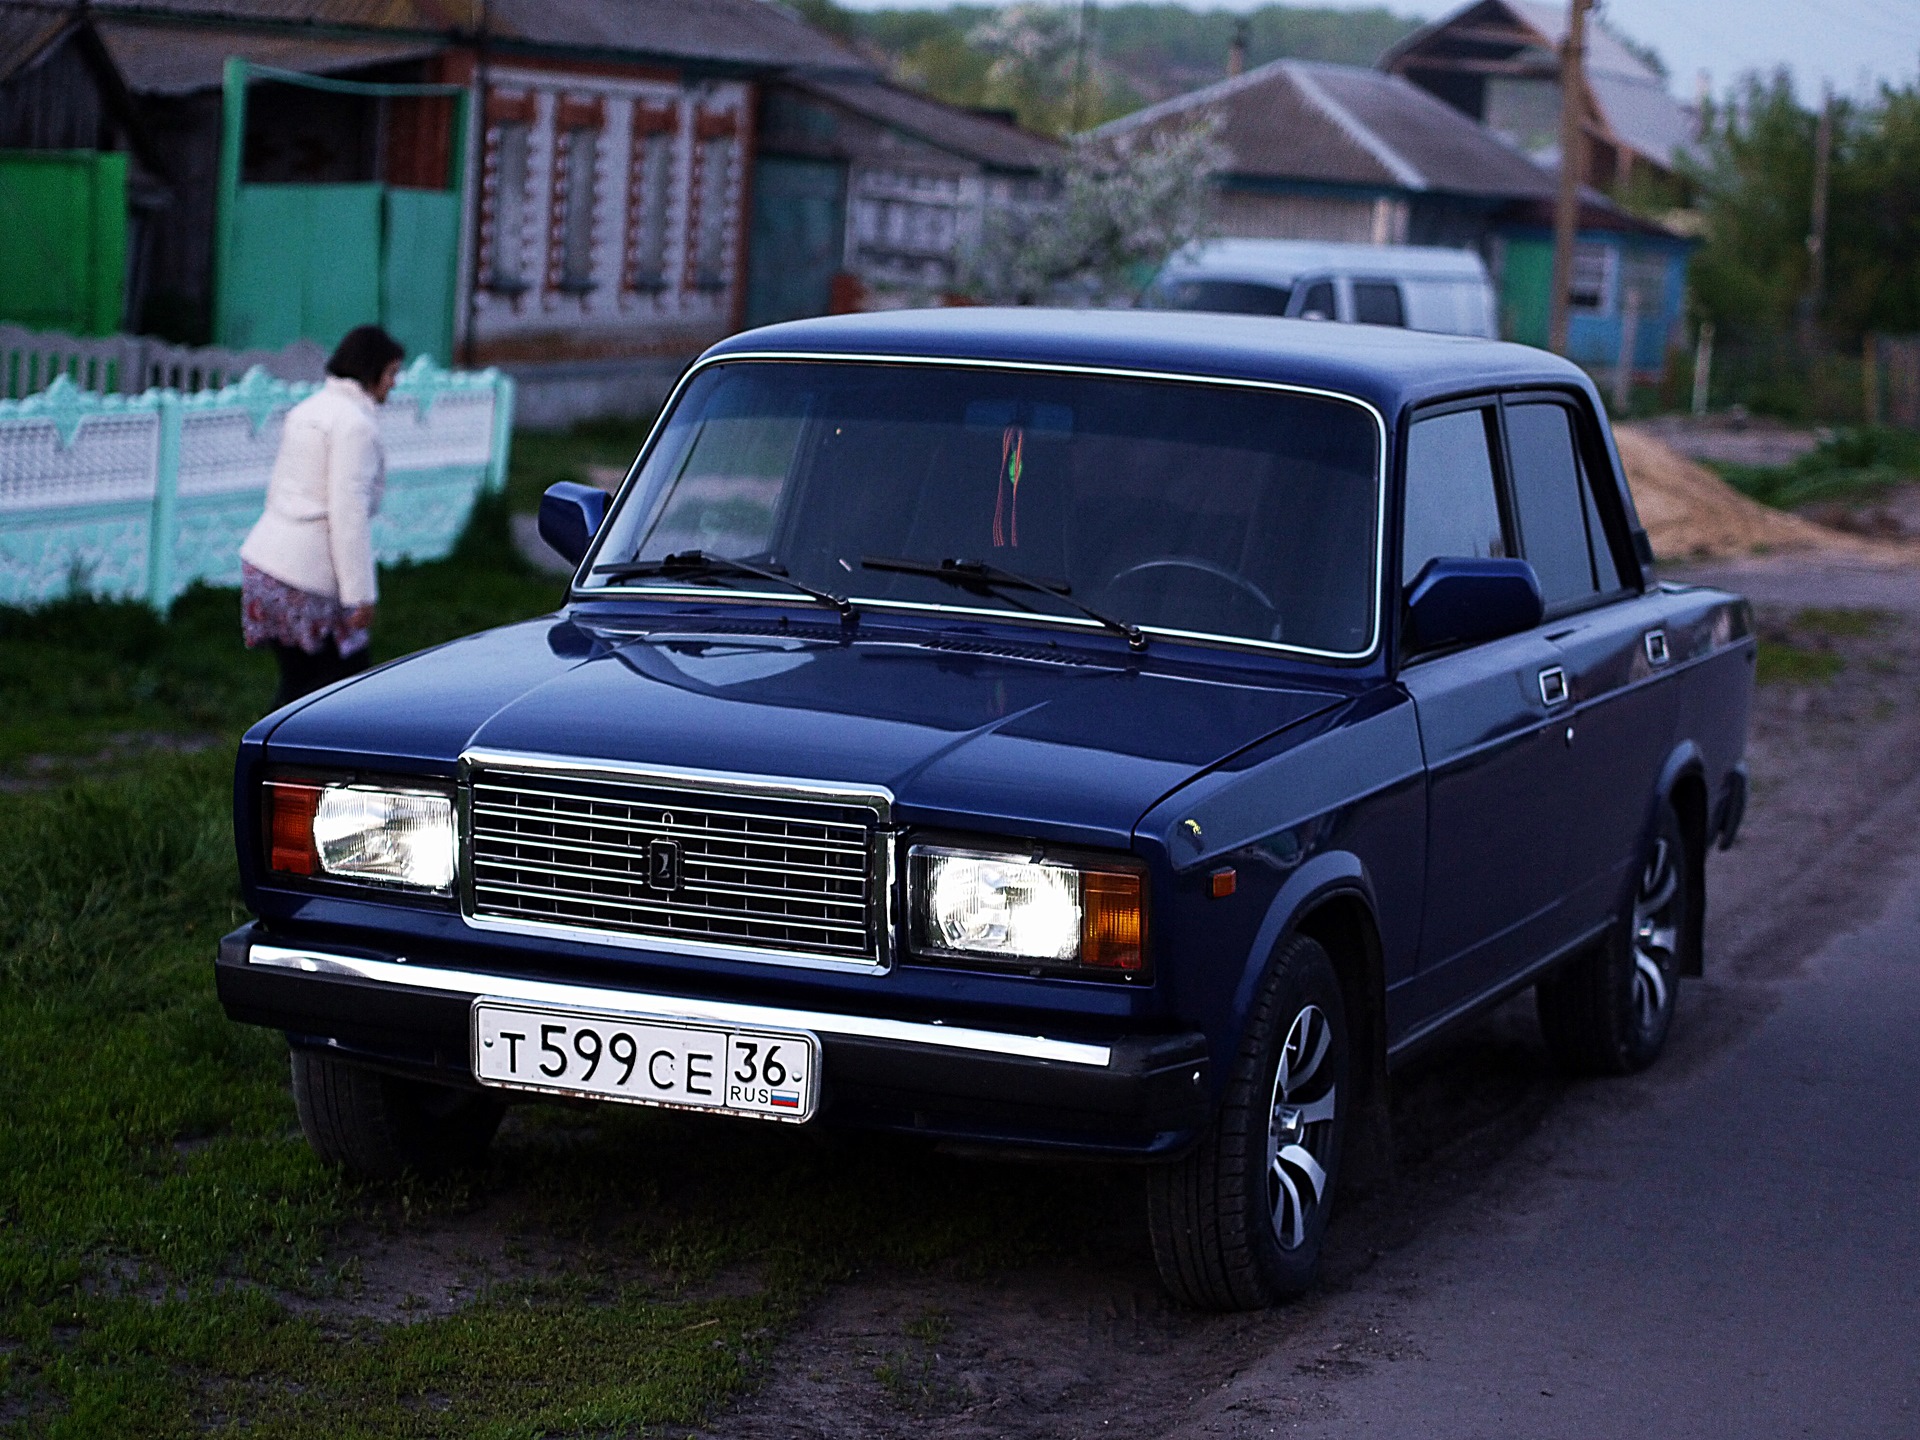 Продажа 2107 алтайский край. ВАЗ-2107 «Жигули». Жигули ВАЗ 2107 2004. ВАЗ 2107 Г. Продается ВАЗ 2107.